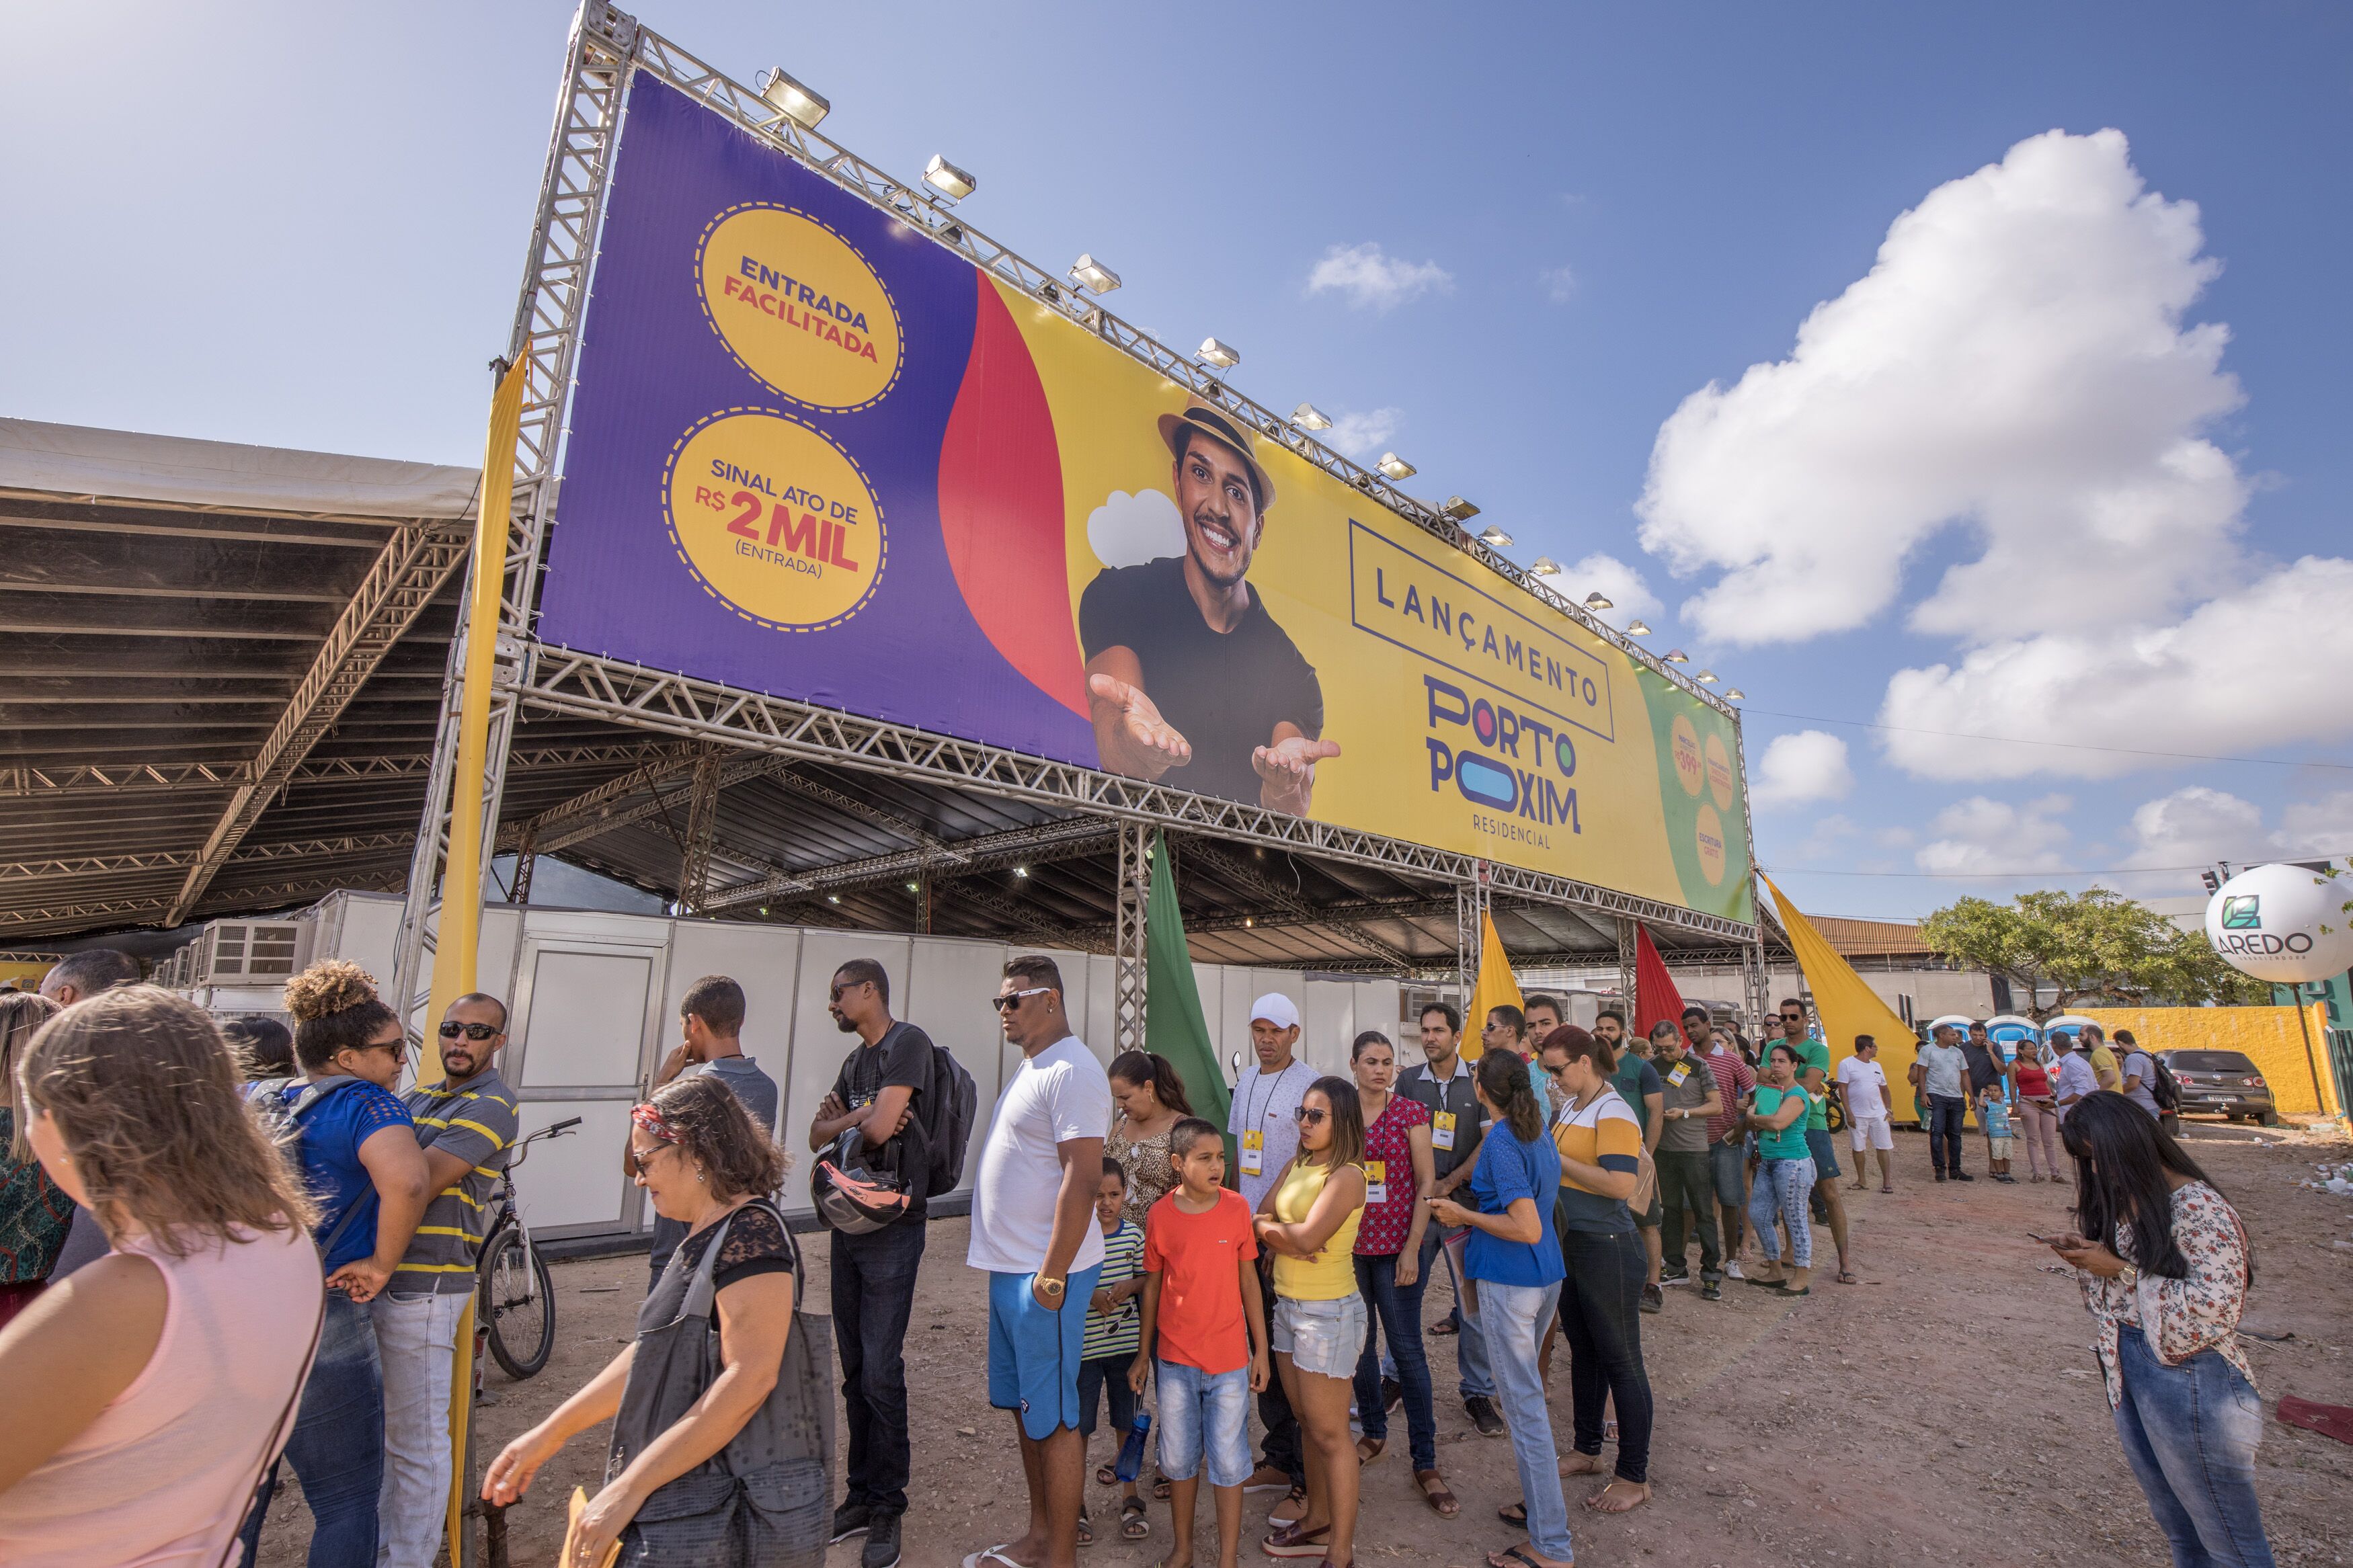 Laredo vende 72% dos lotes disponíveis no lançamento do Porto Poxim